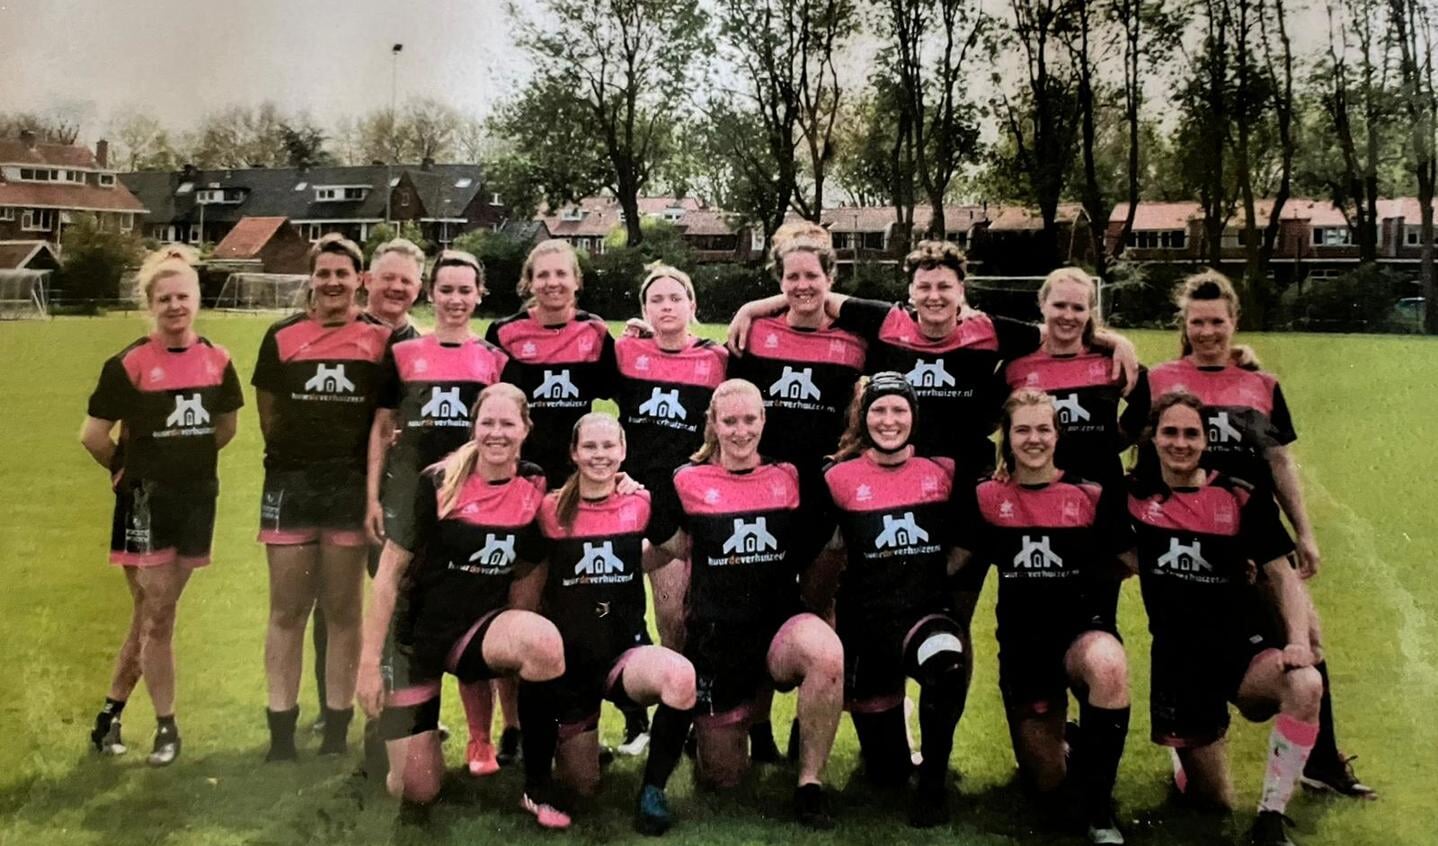 Huidige selectie dames. Alkmaarse Rugby Club ziet het aantal dames bij de club graag groeien.